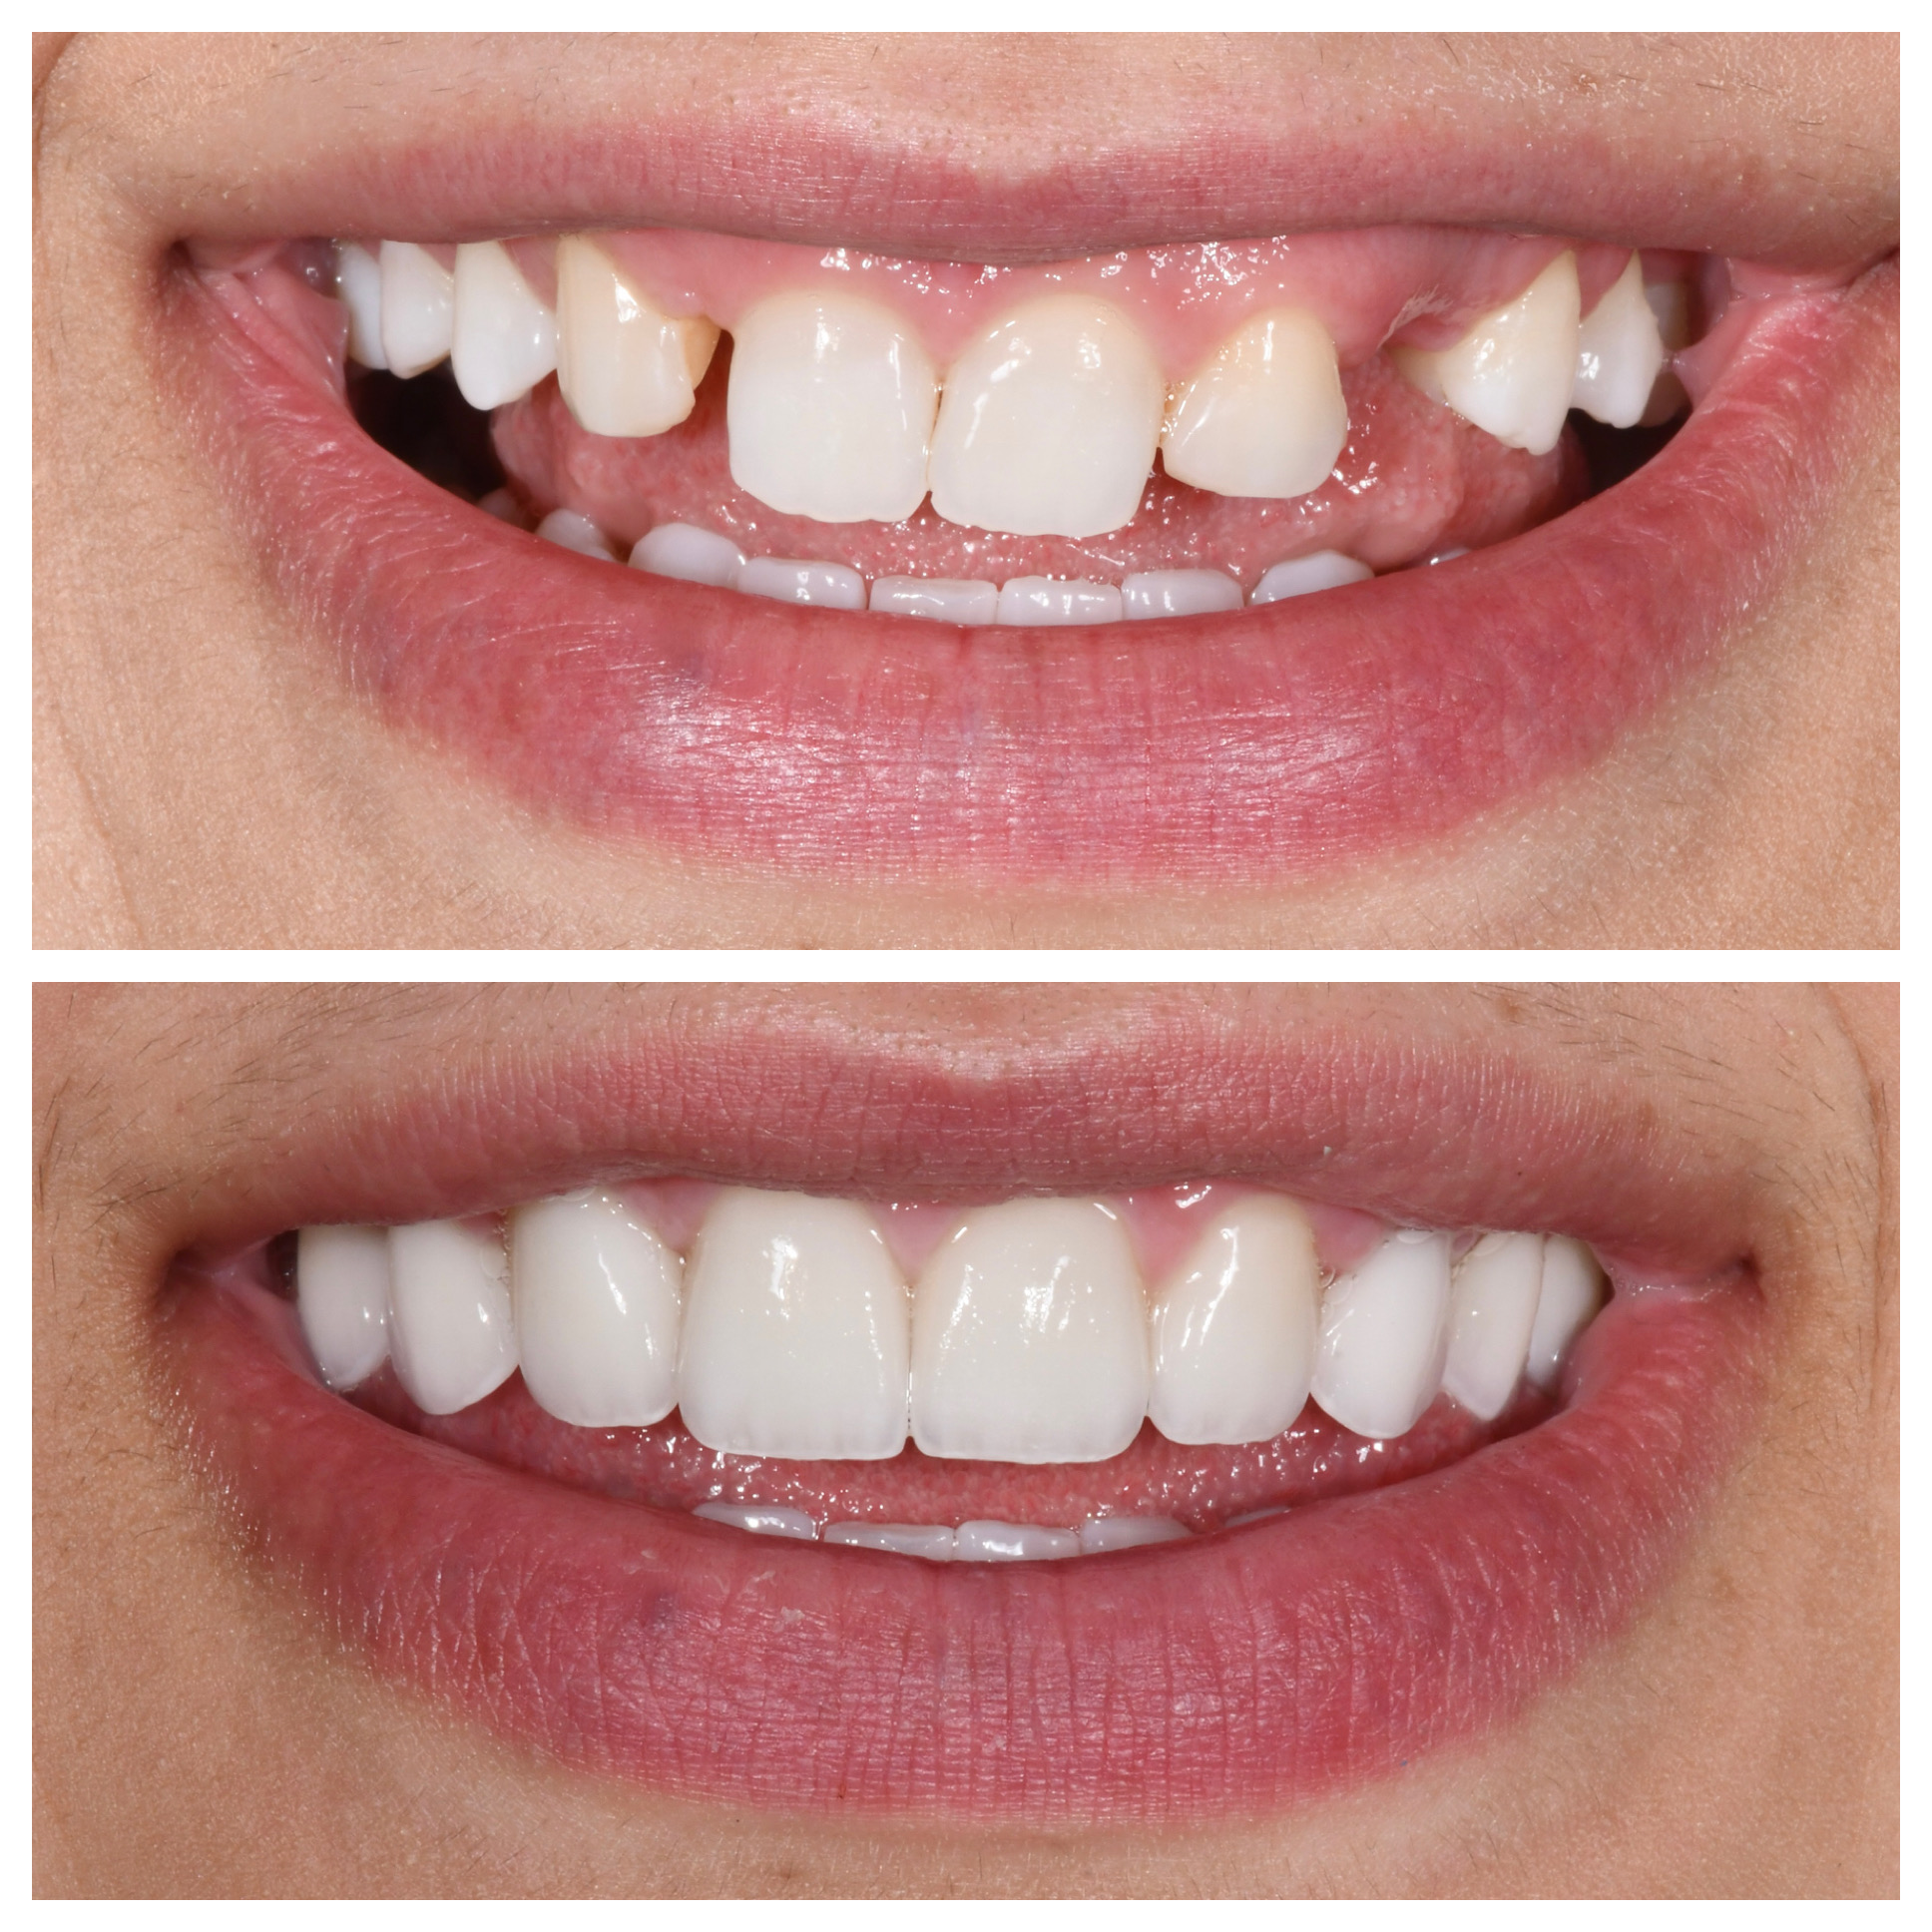 Veneers and implants to replace missing teeth